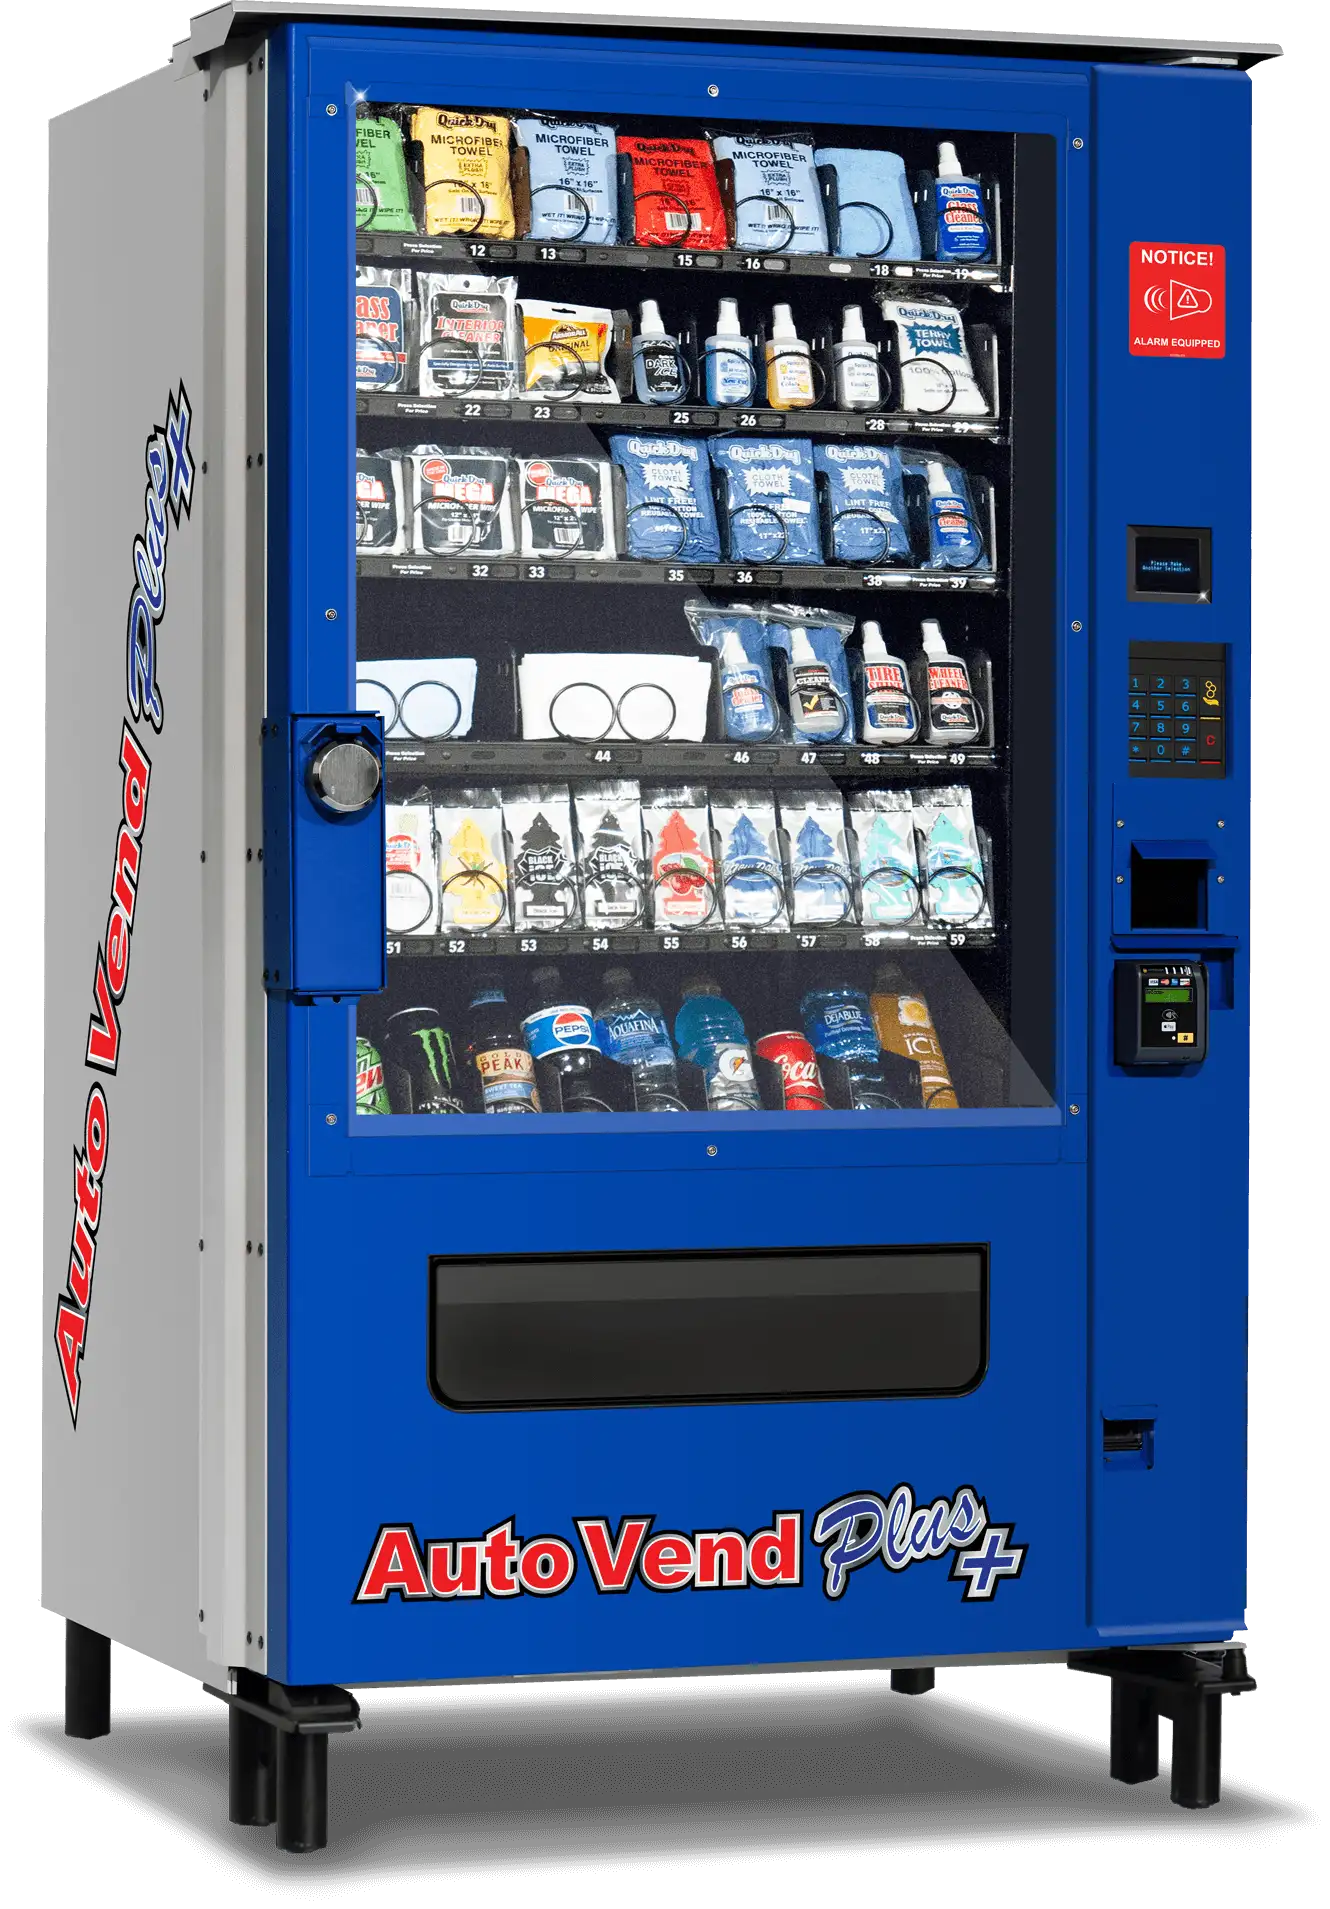 AutoVend Plus Car Wash Vending Machine For Sale